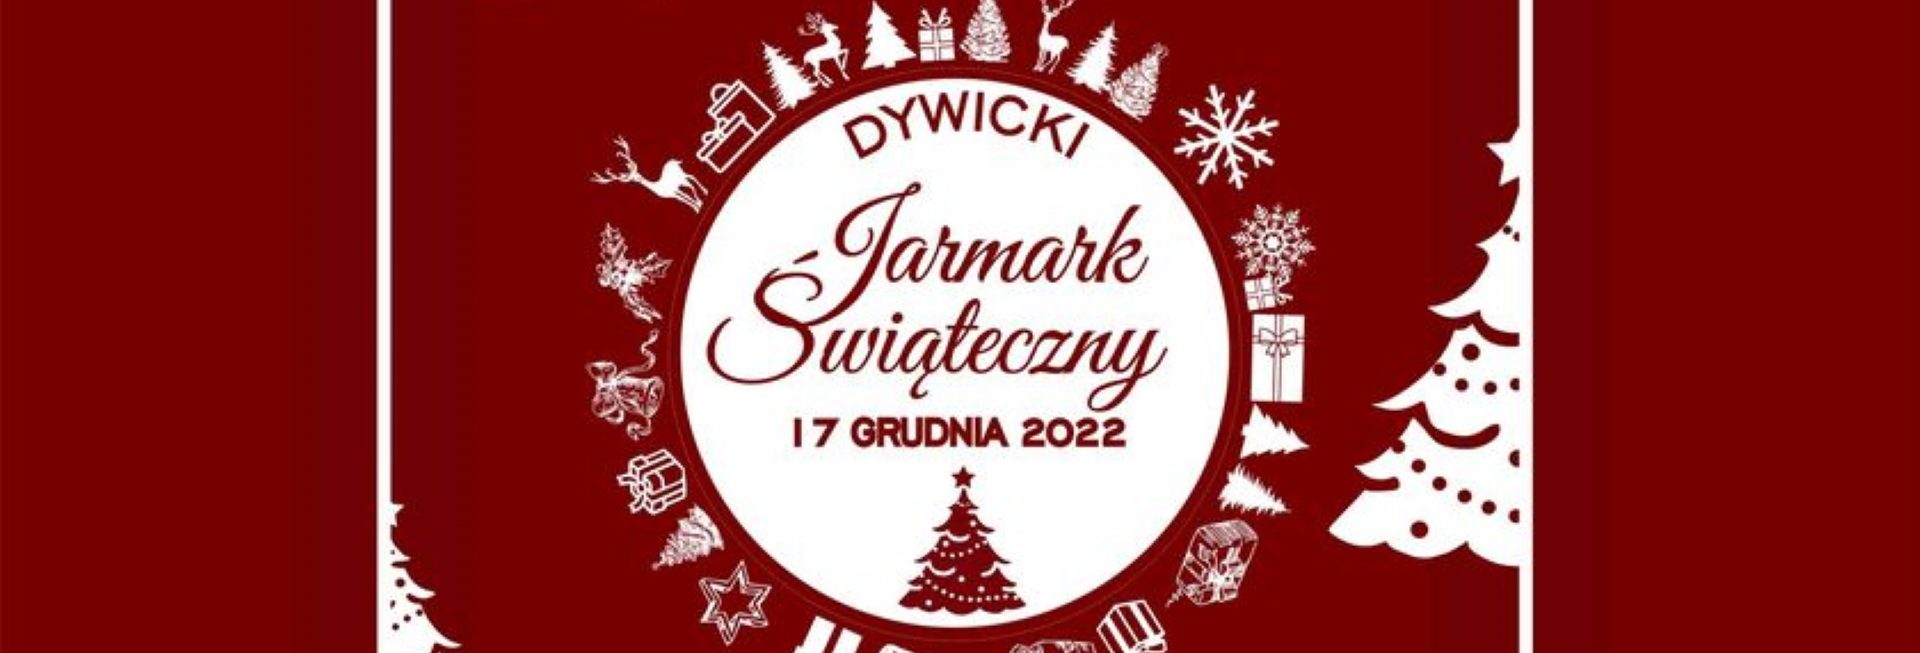 Plakat zapraszający do Dywit na Dywicki Jarmark Bożonarodzeniowy Dywity 2022.